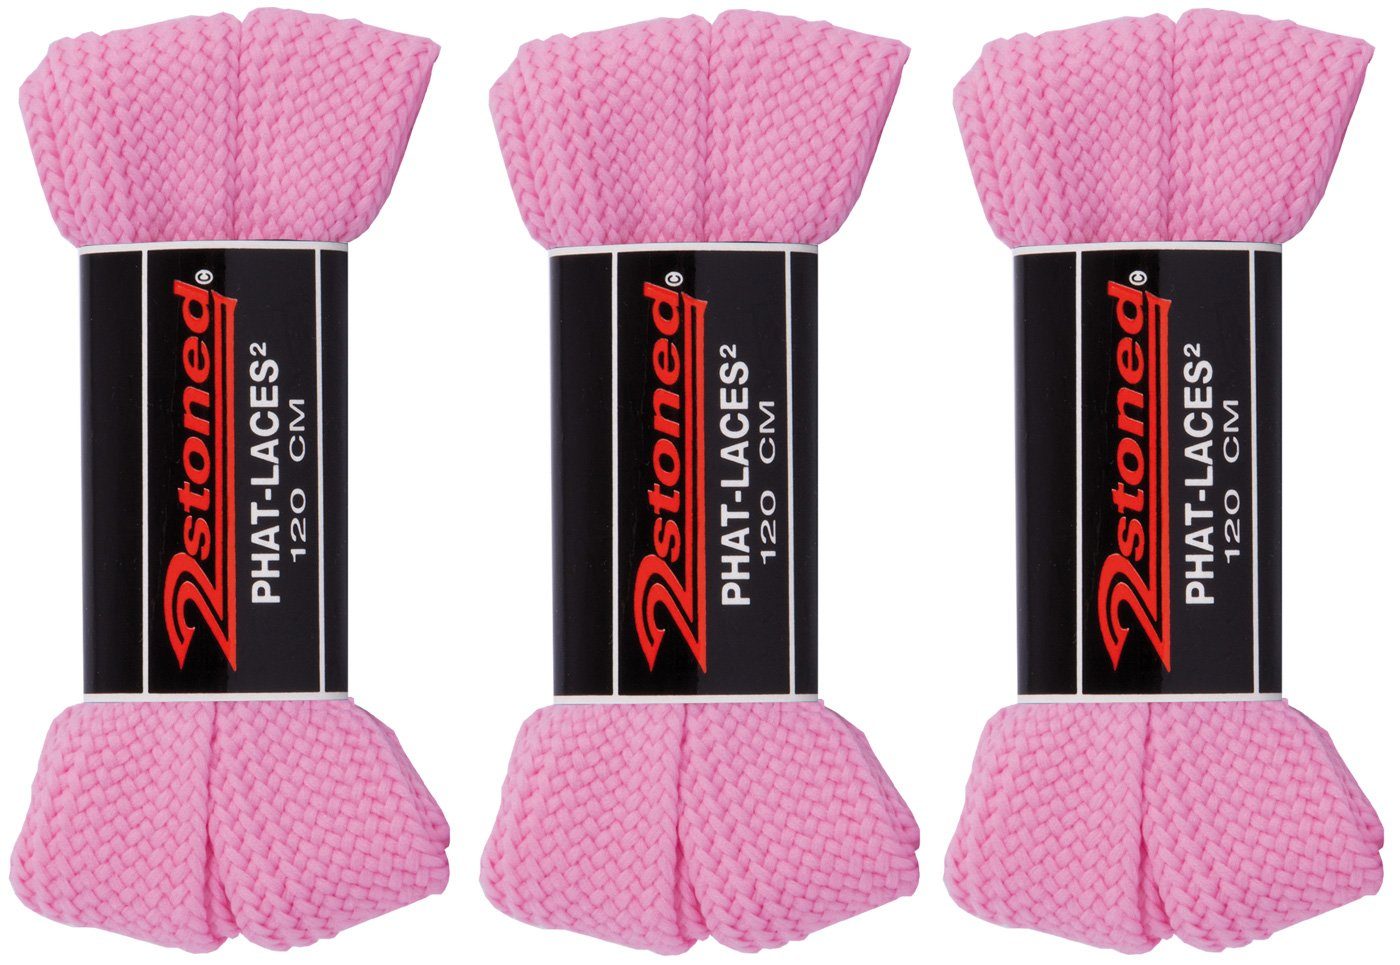 2Stoned Schnürsenkel Bundle Phat Laces 120 cm lang und 3 cm breit, 3 Paar, extrabreit für Sneaker und Turnschuhe Rosa